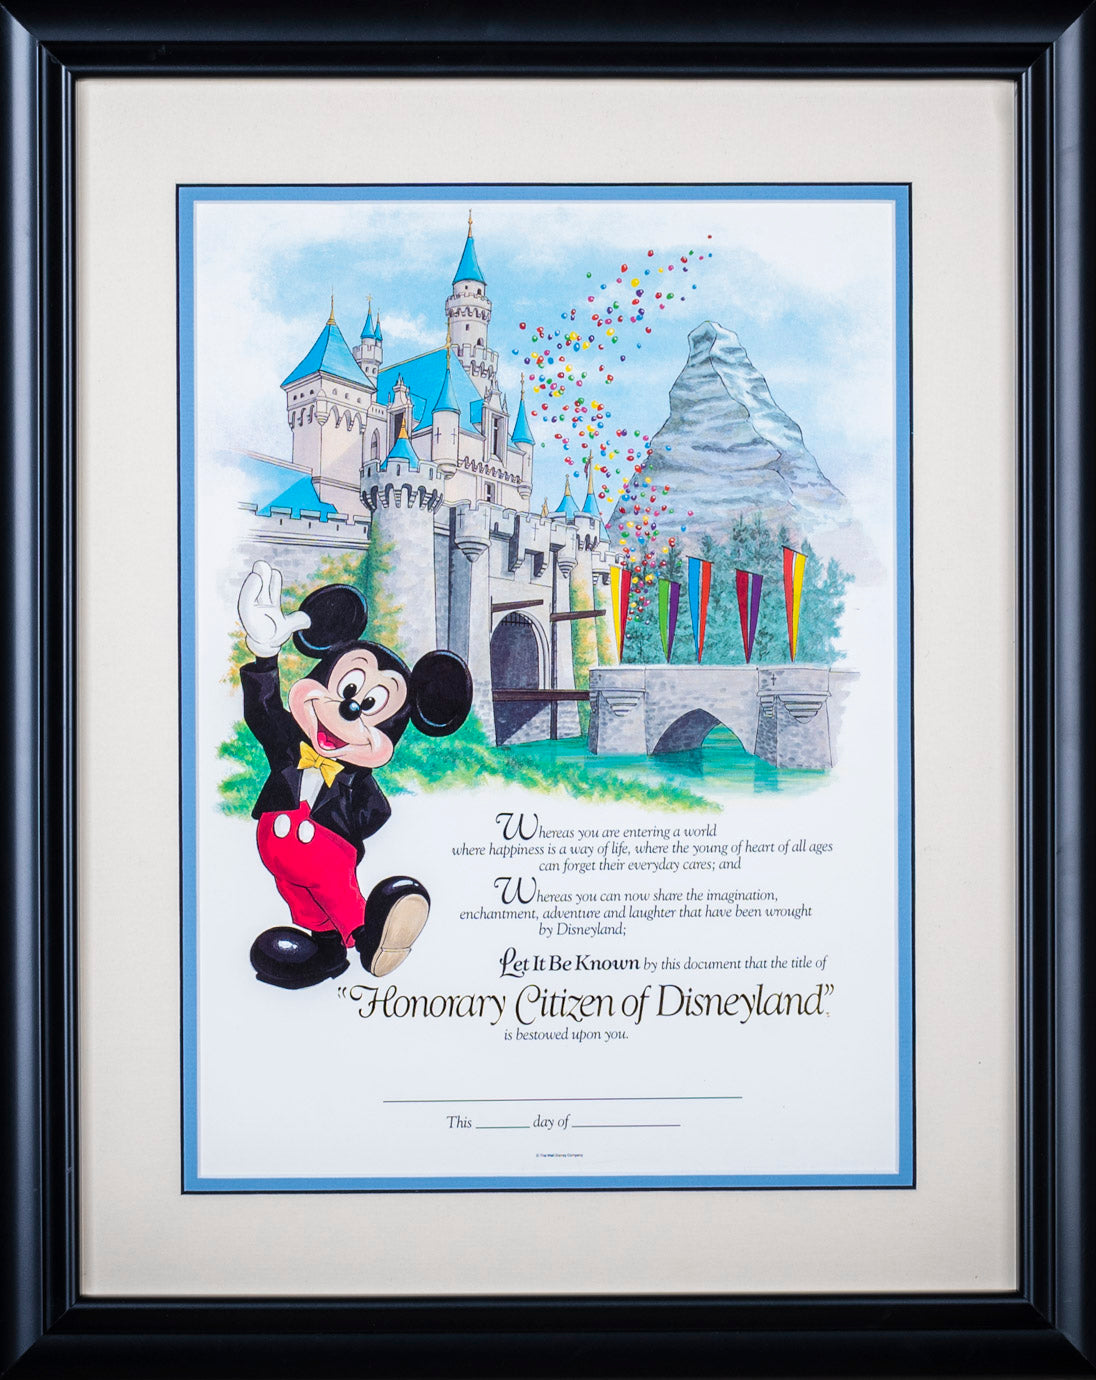 Honorary Citizen of Disneyland Certificate